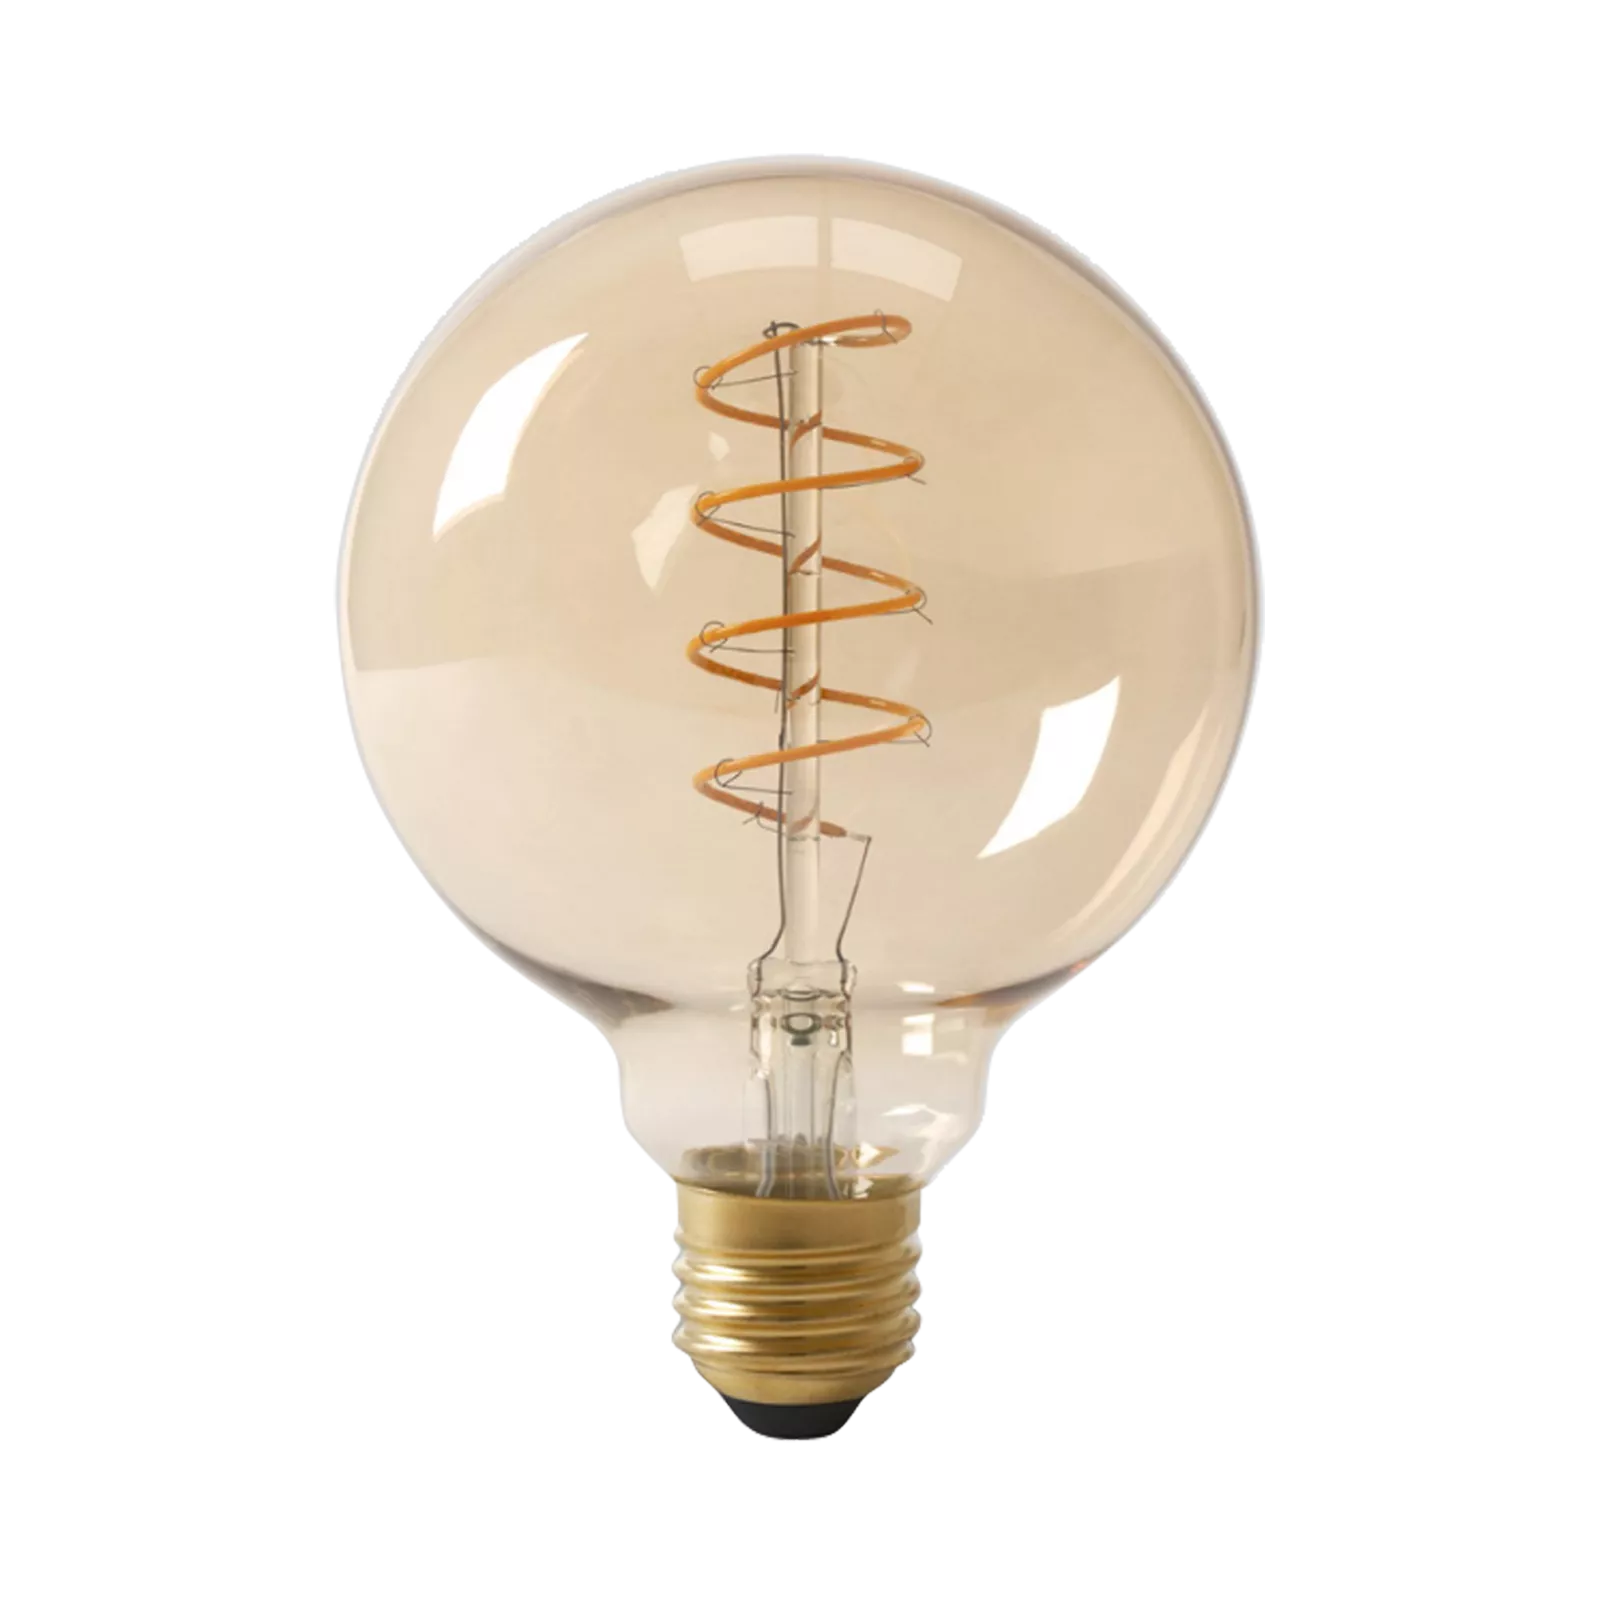 LED lamp (125x170mm) Flex Globe - Gold 